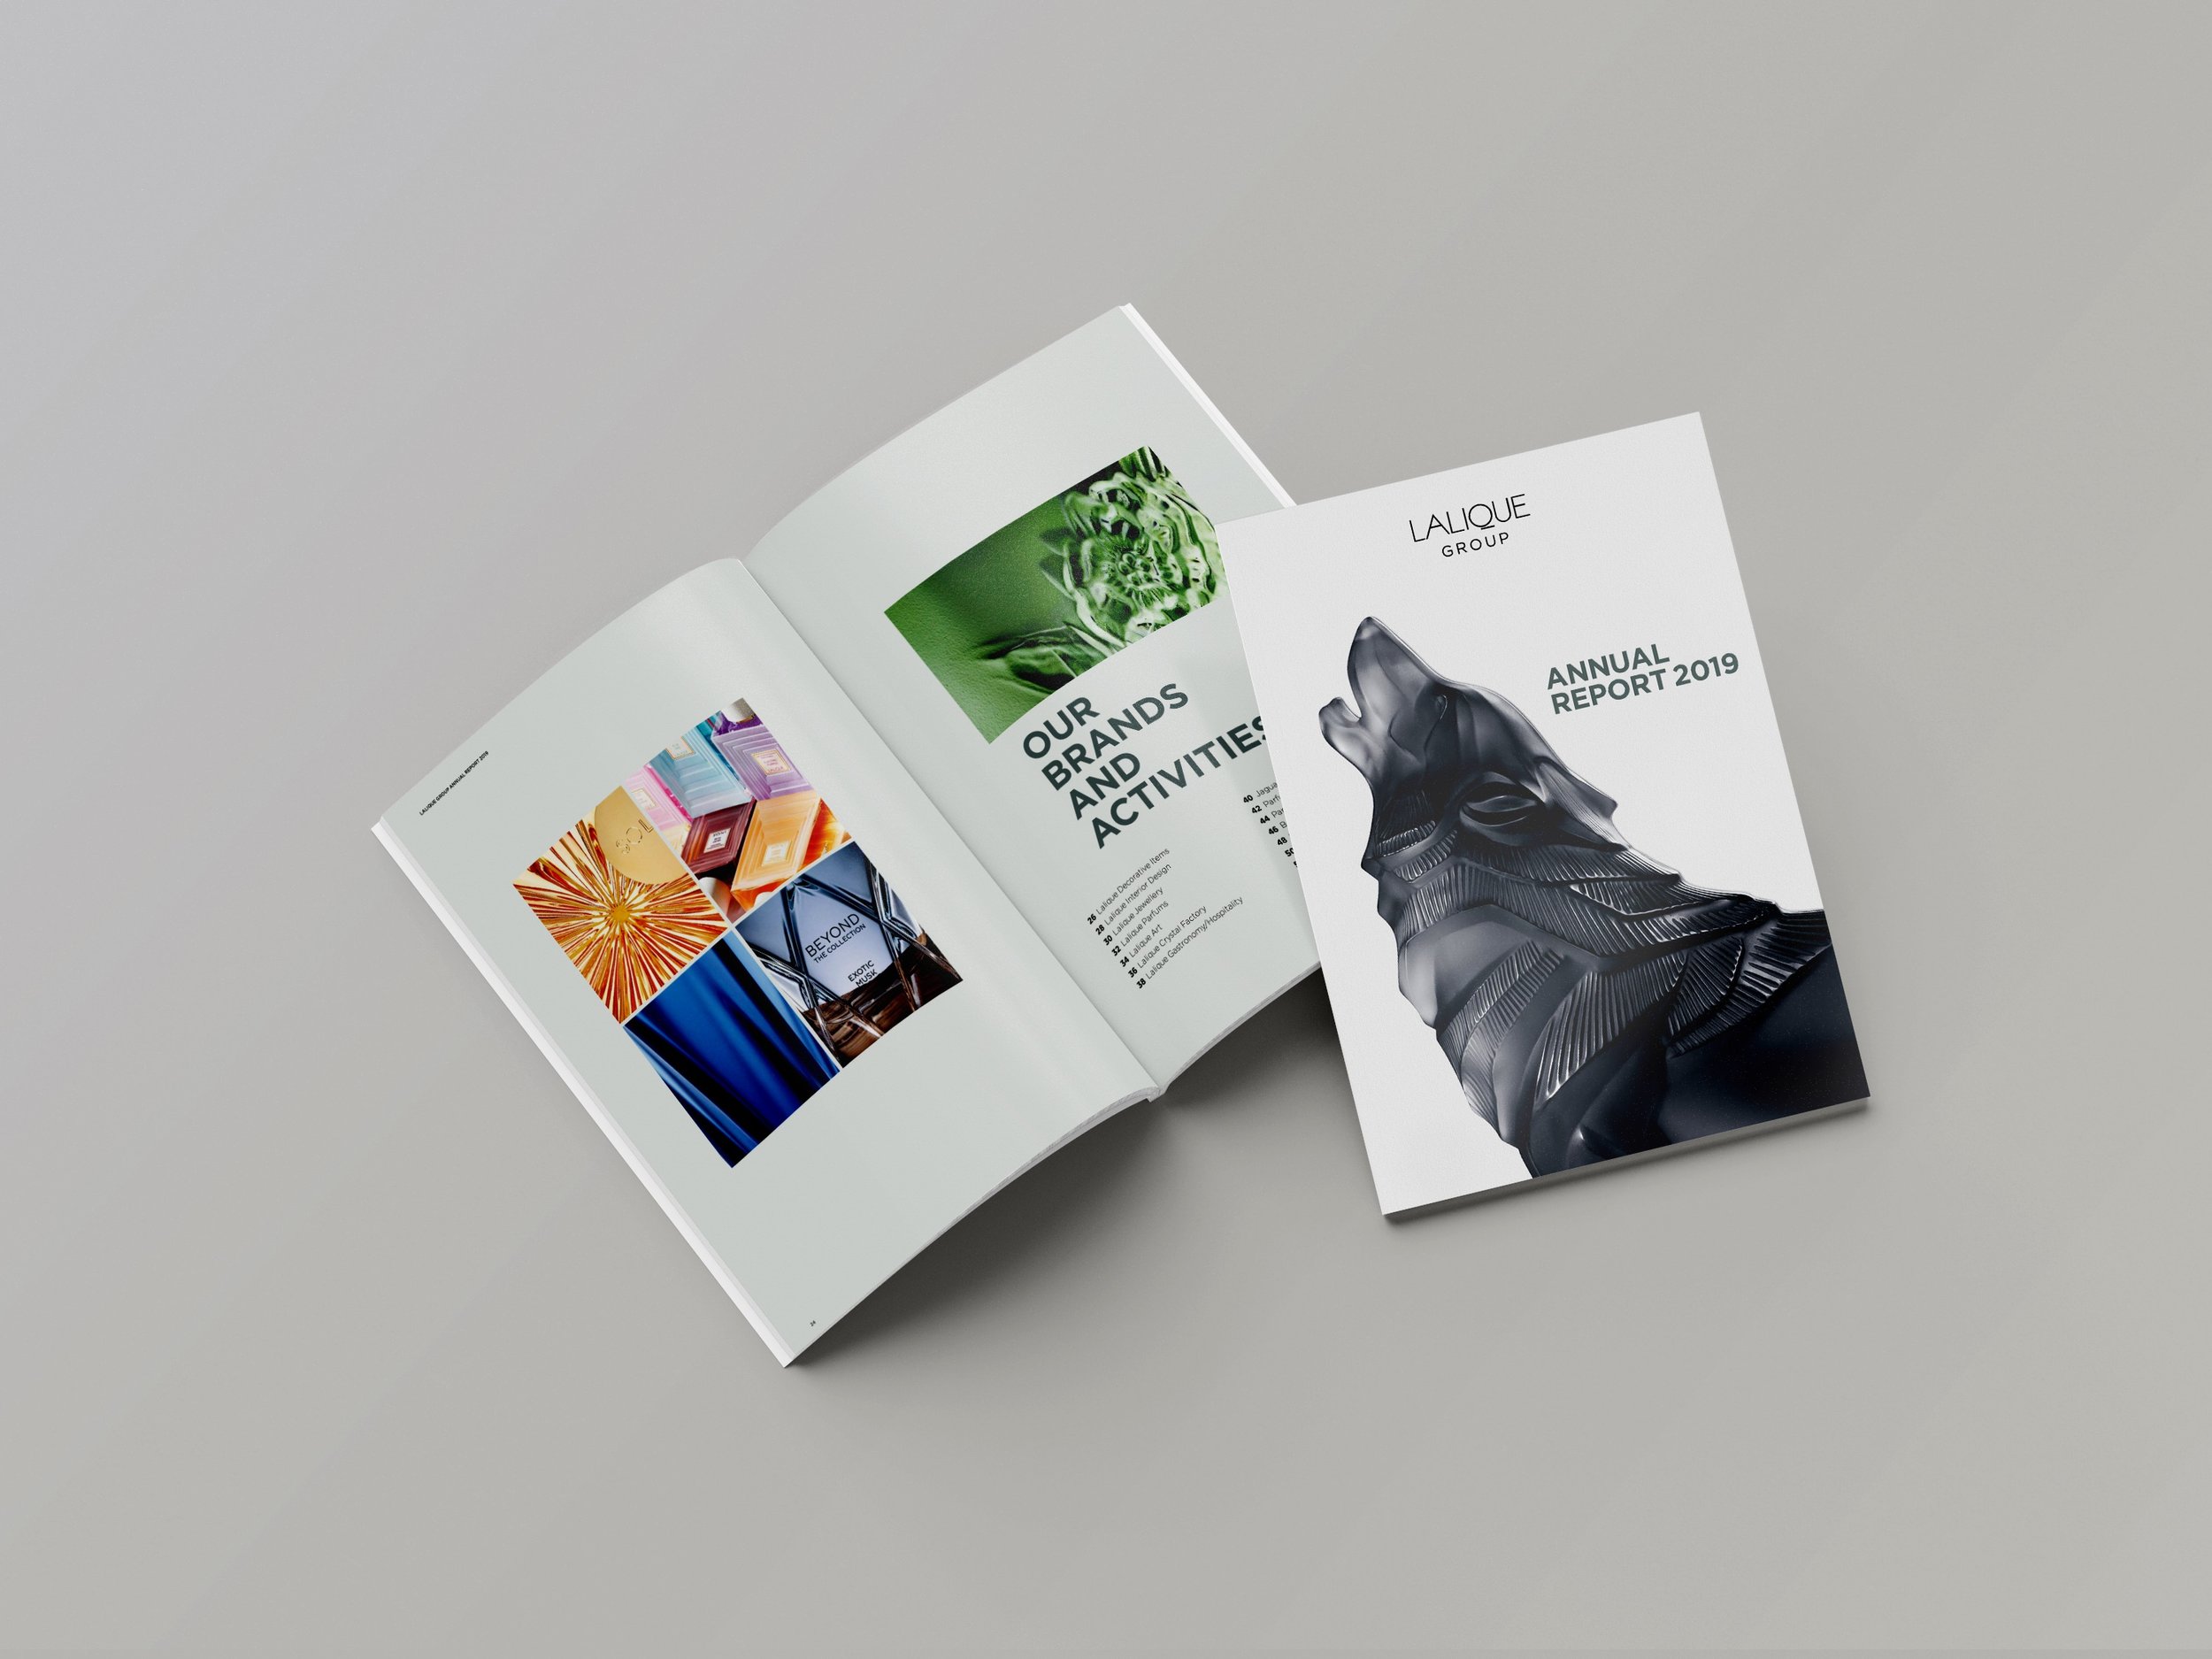 Couverture du rapport annuel 2019 de Lalique